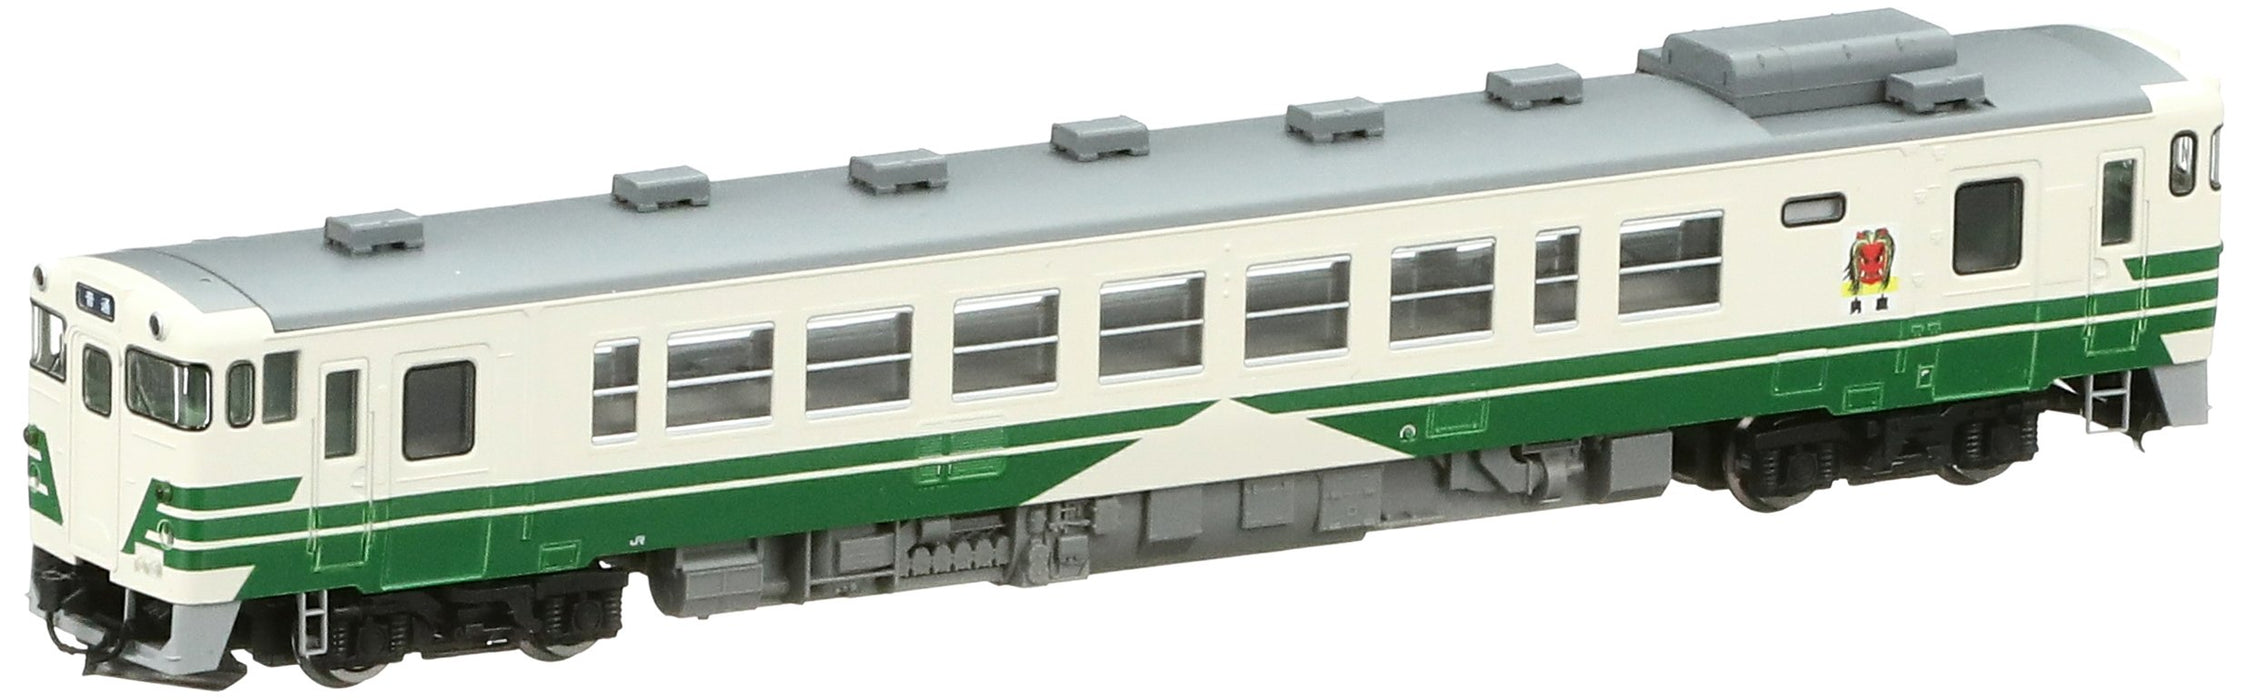 Tomytec Tomix Kiha 40 500 Oga Line M 9416 Spur N Eisenbahn Modell Dieselwagen